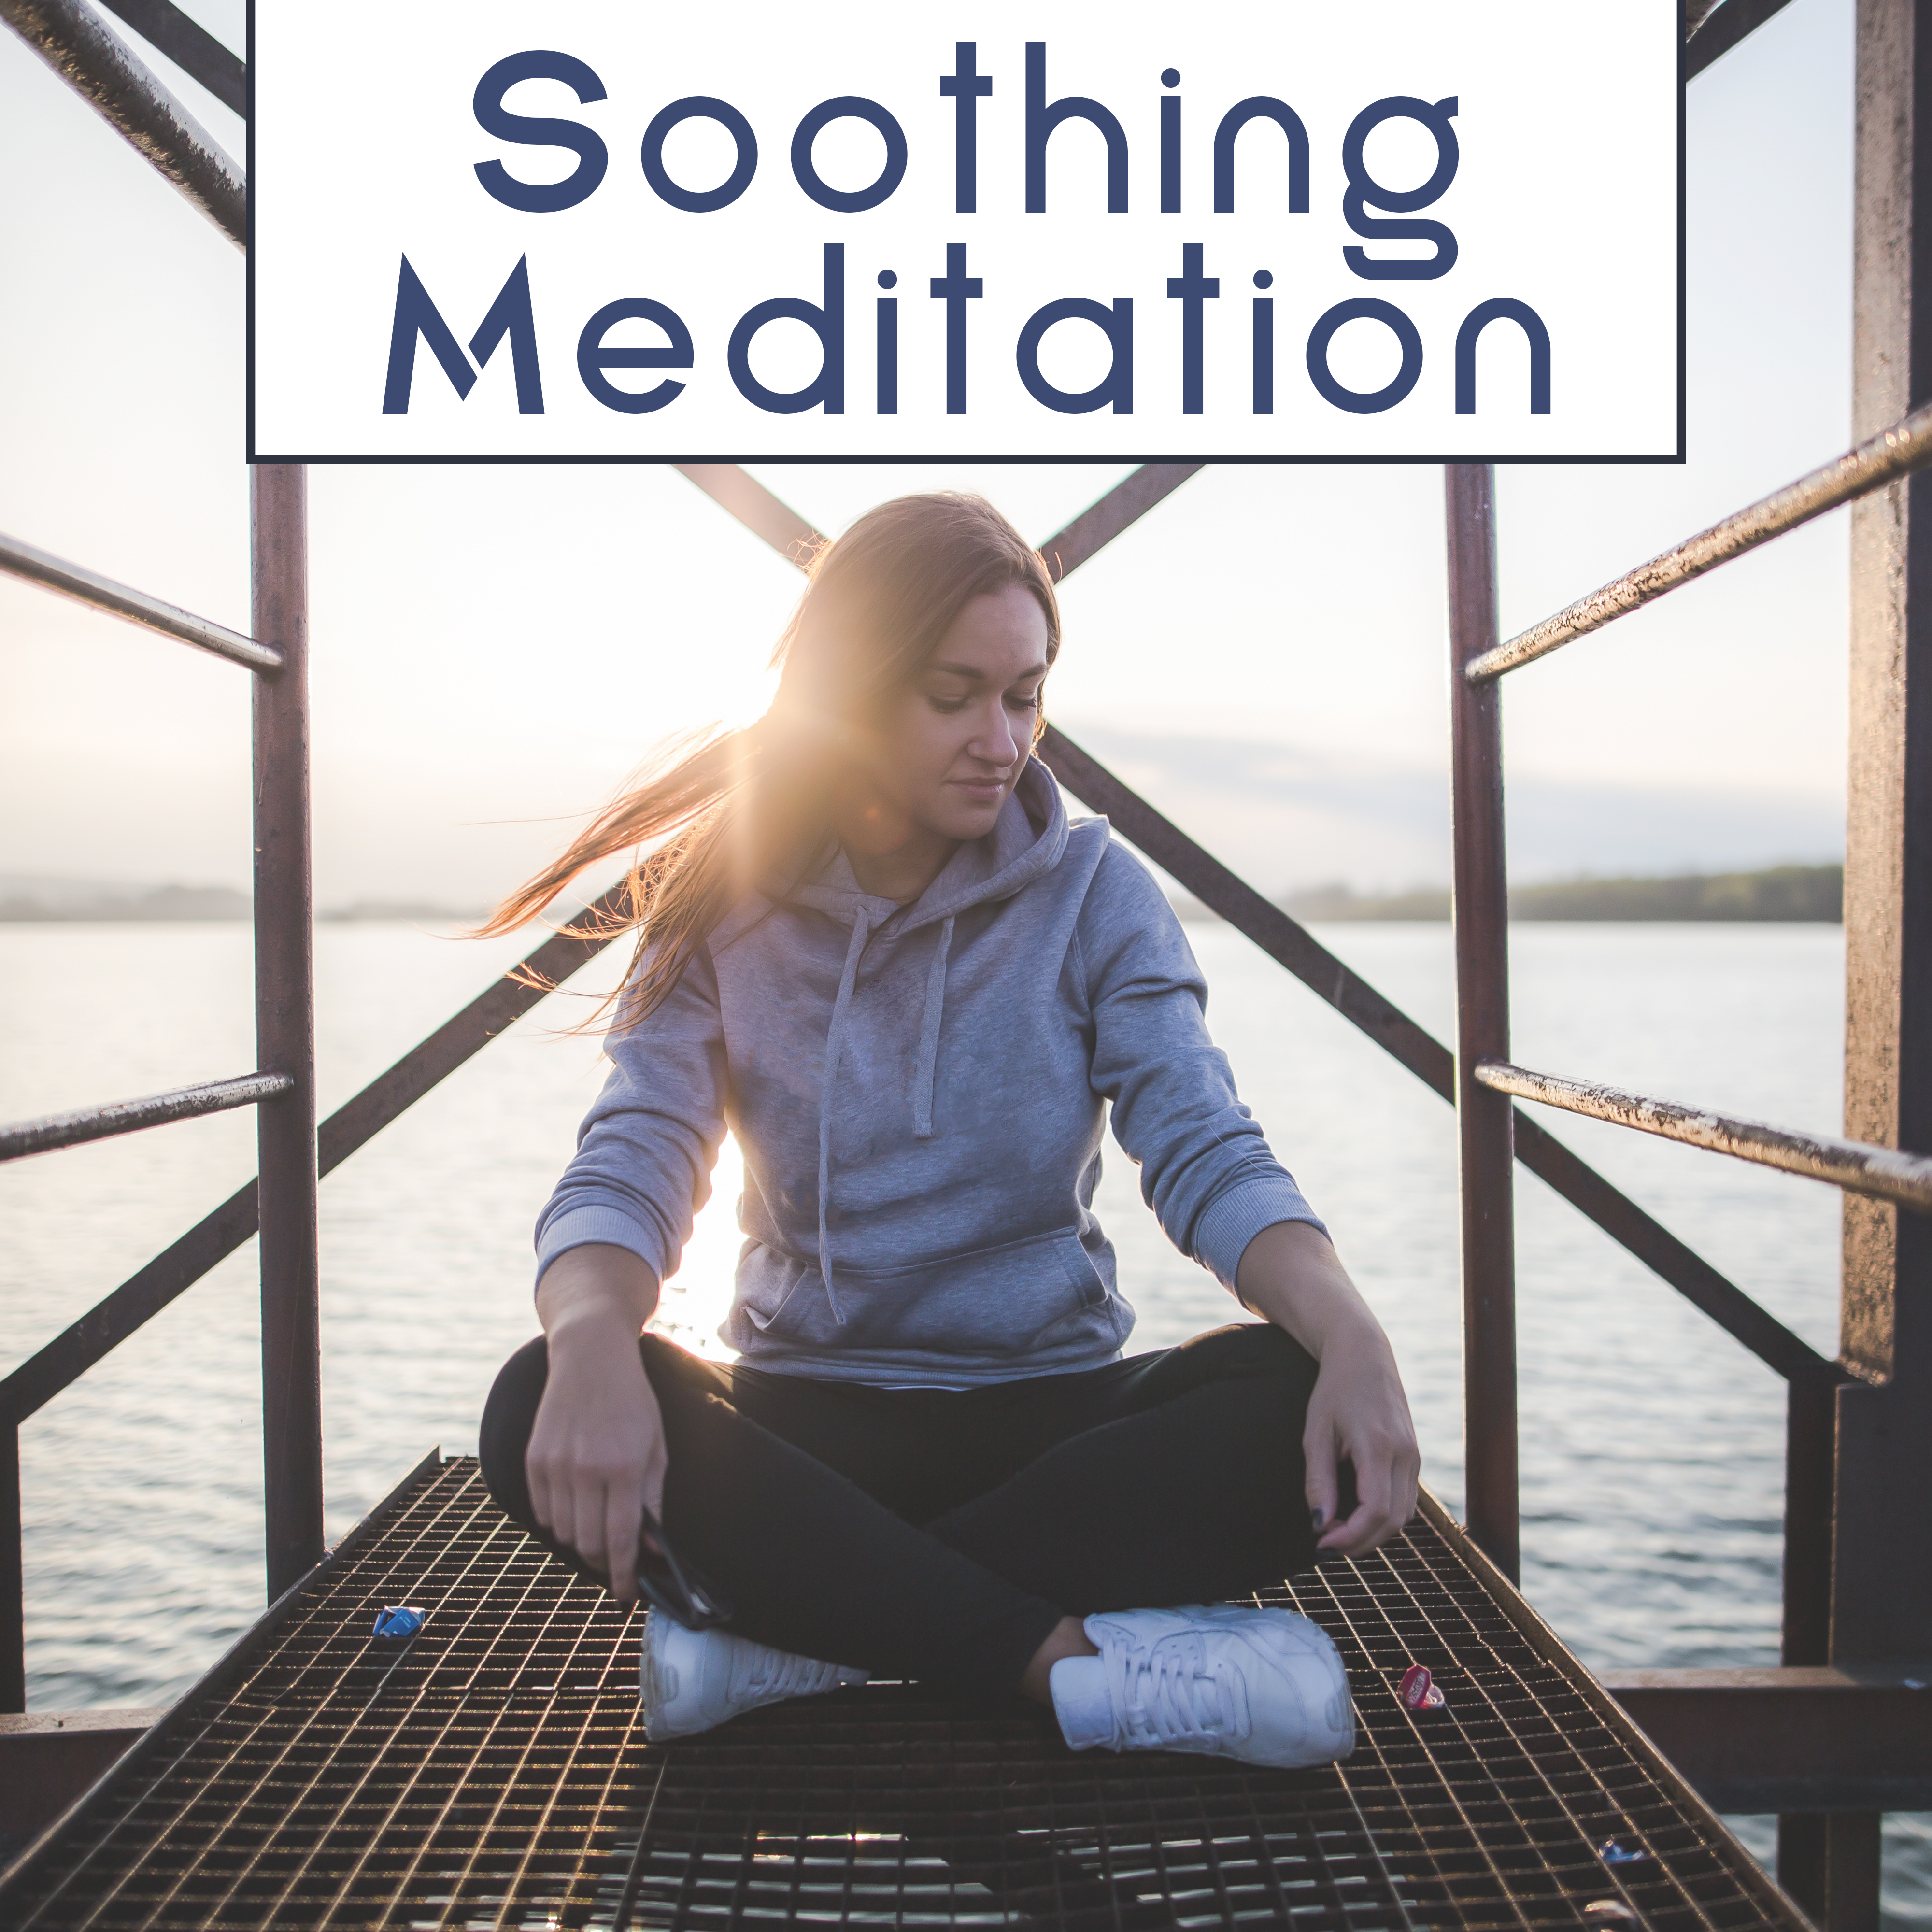 Meditation: Focus